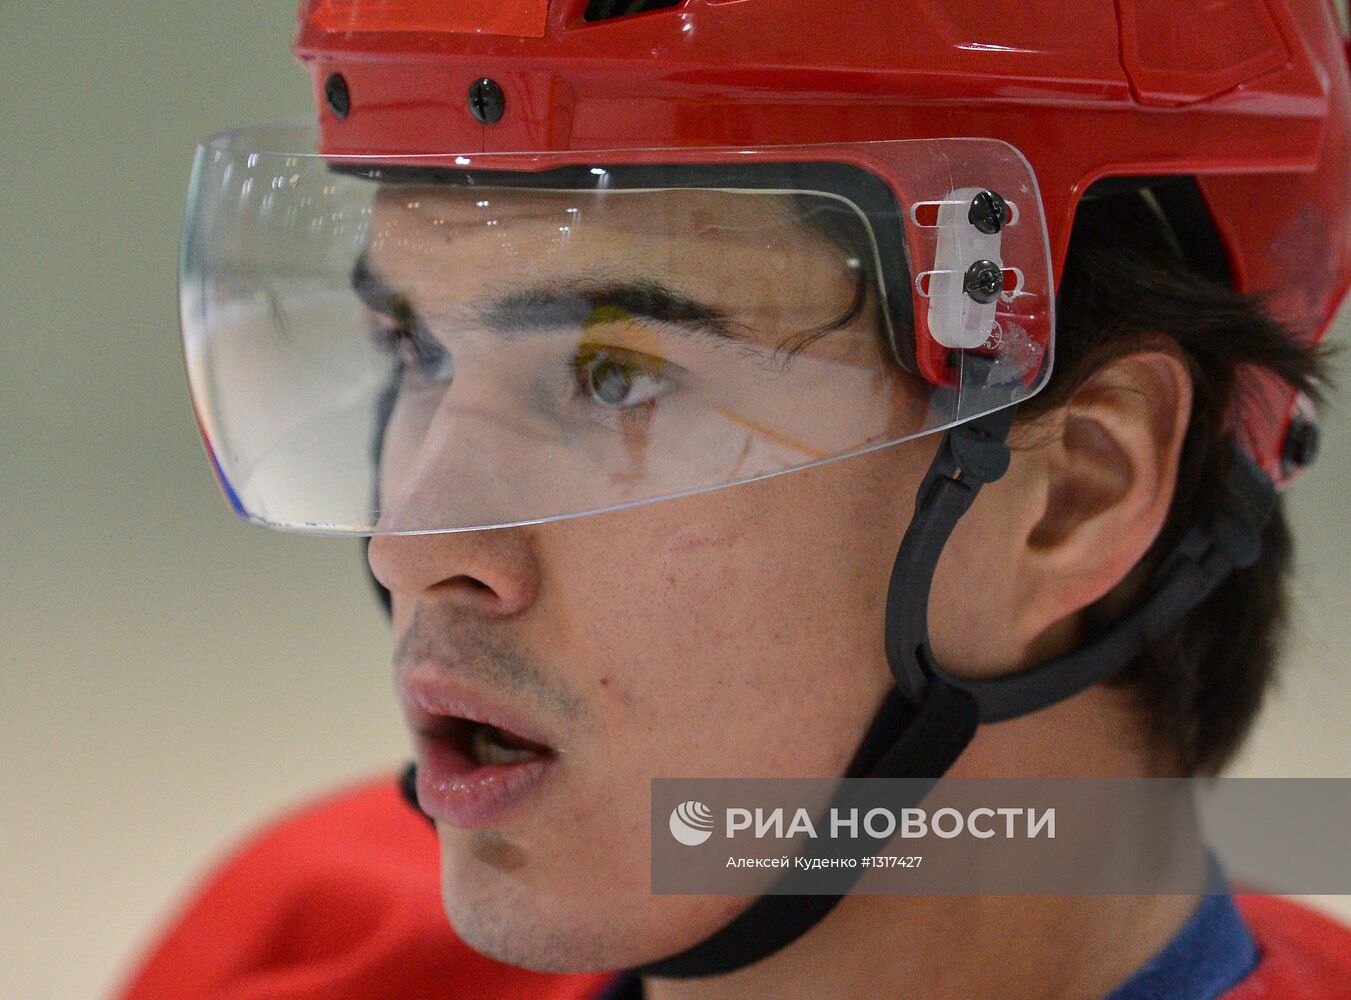 Хоккей. Тренировка молодежной сборной России